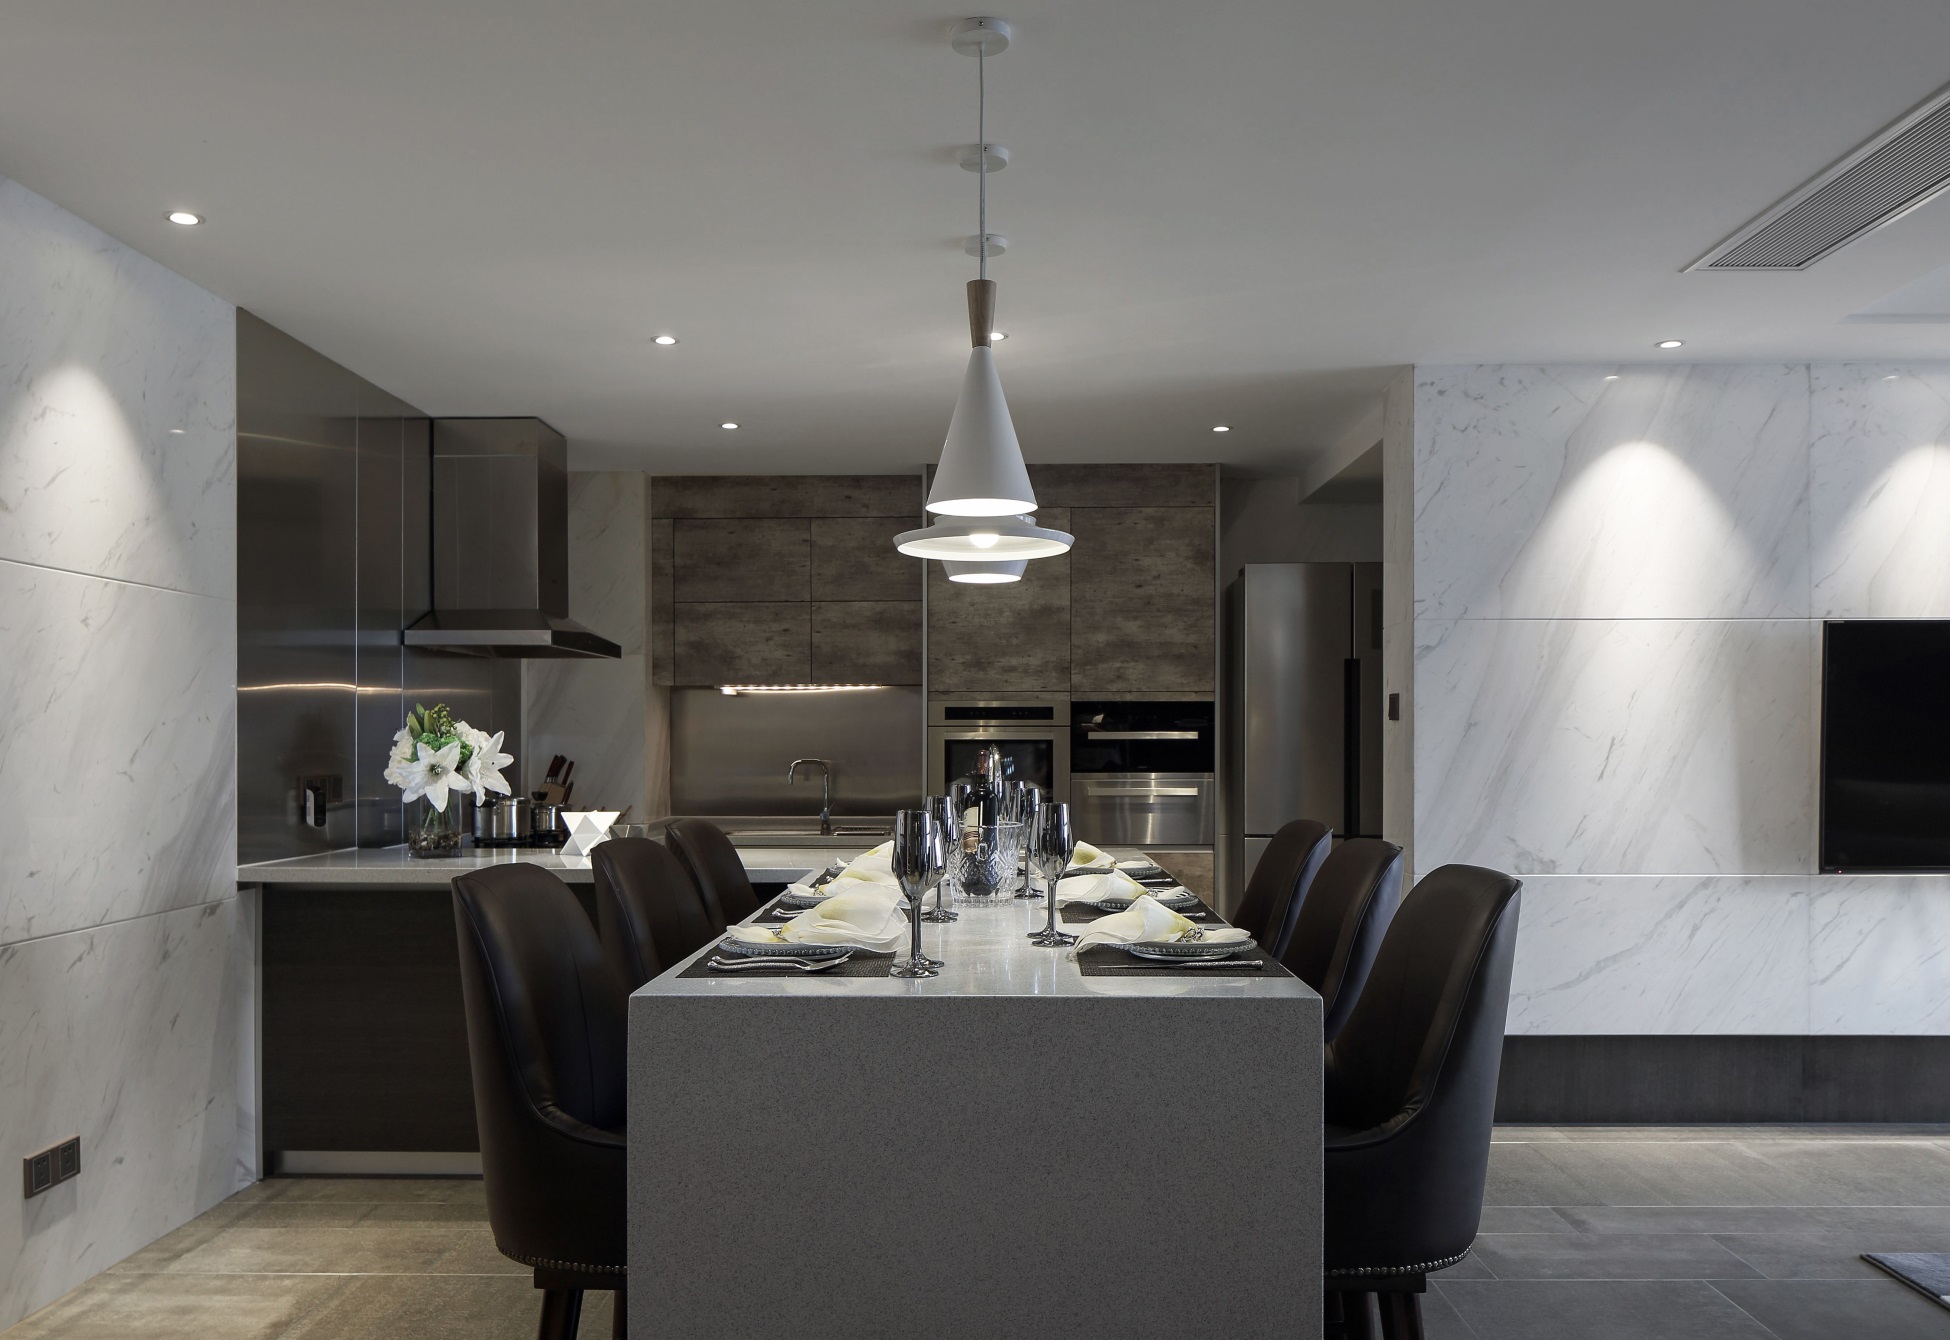 厨房餐厅一体化设计，整个空间以灰黑色为主，渲染出稳重的空间氛围。